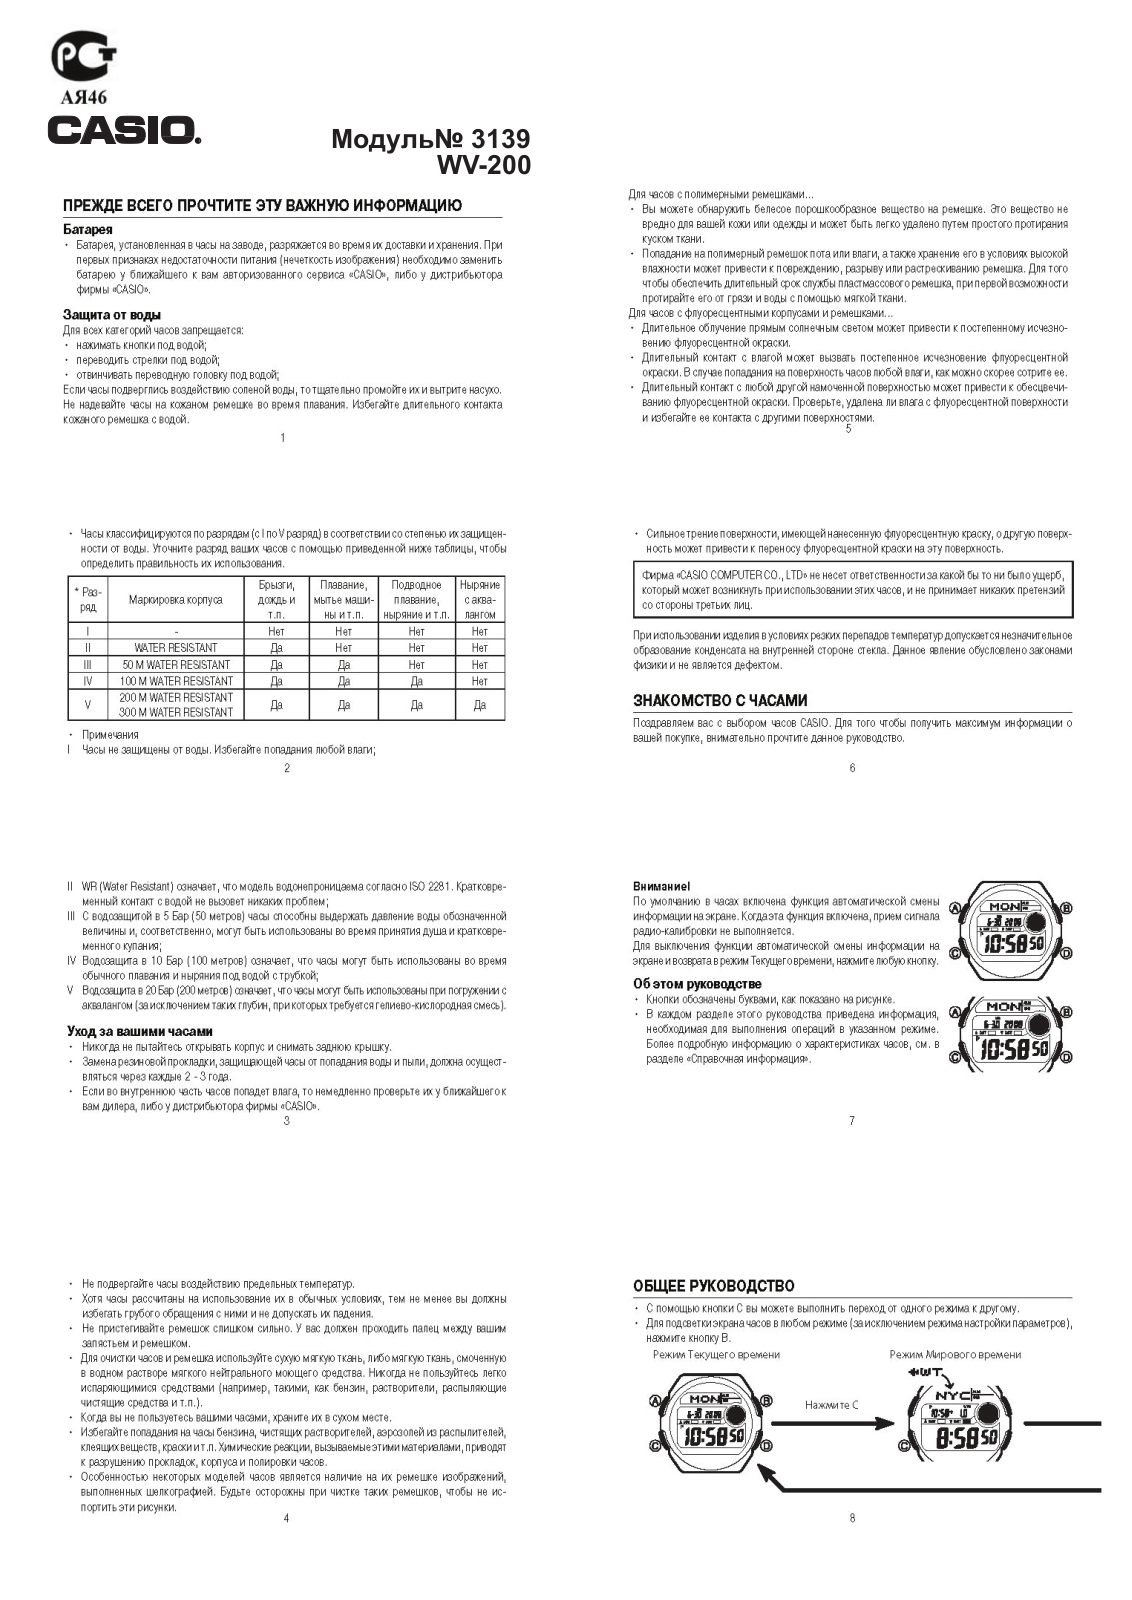 Casio WV-M60-9A User Manual